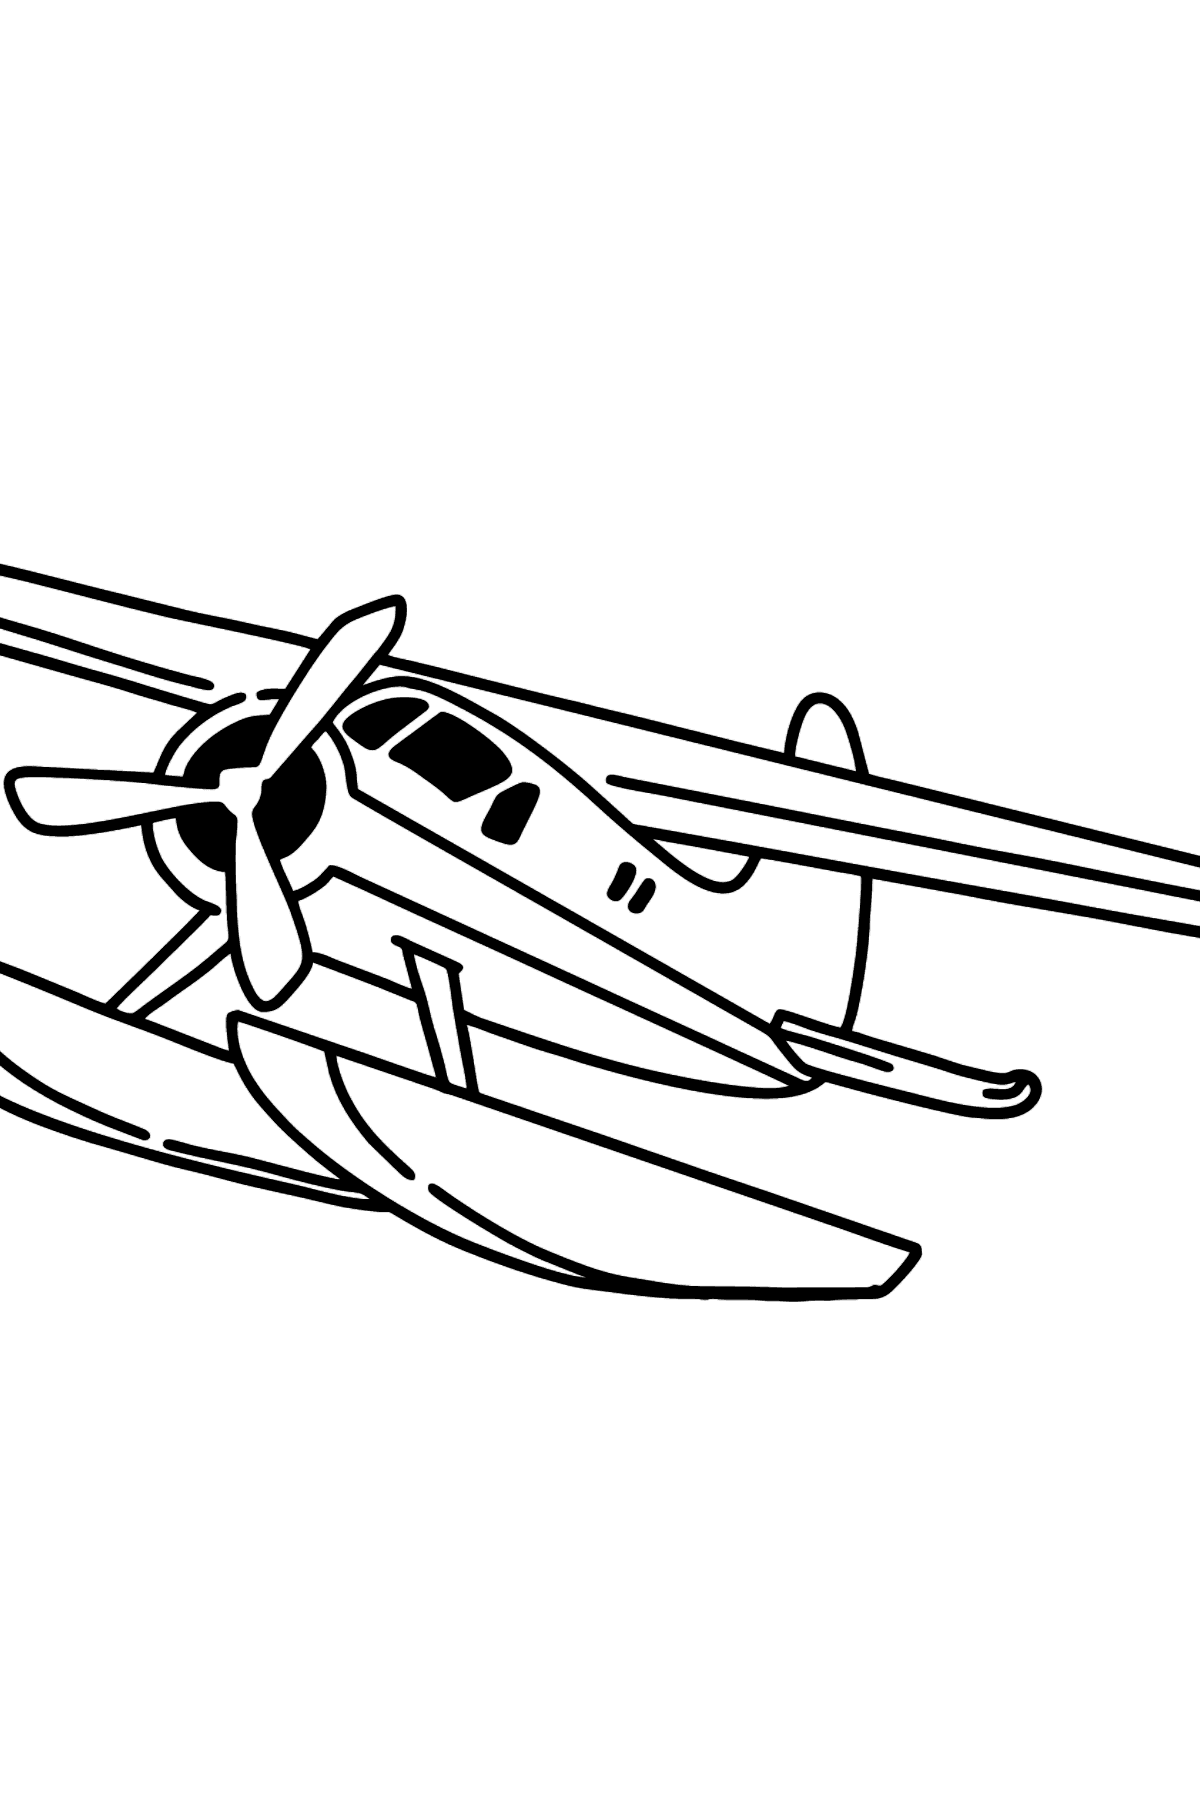 Tegning til fargelegging jetfly be-200 - Tegninger til fargelegging for barn